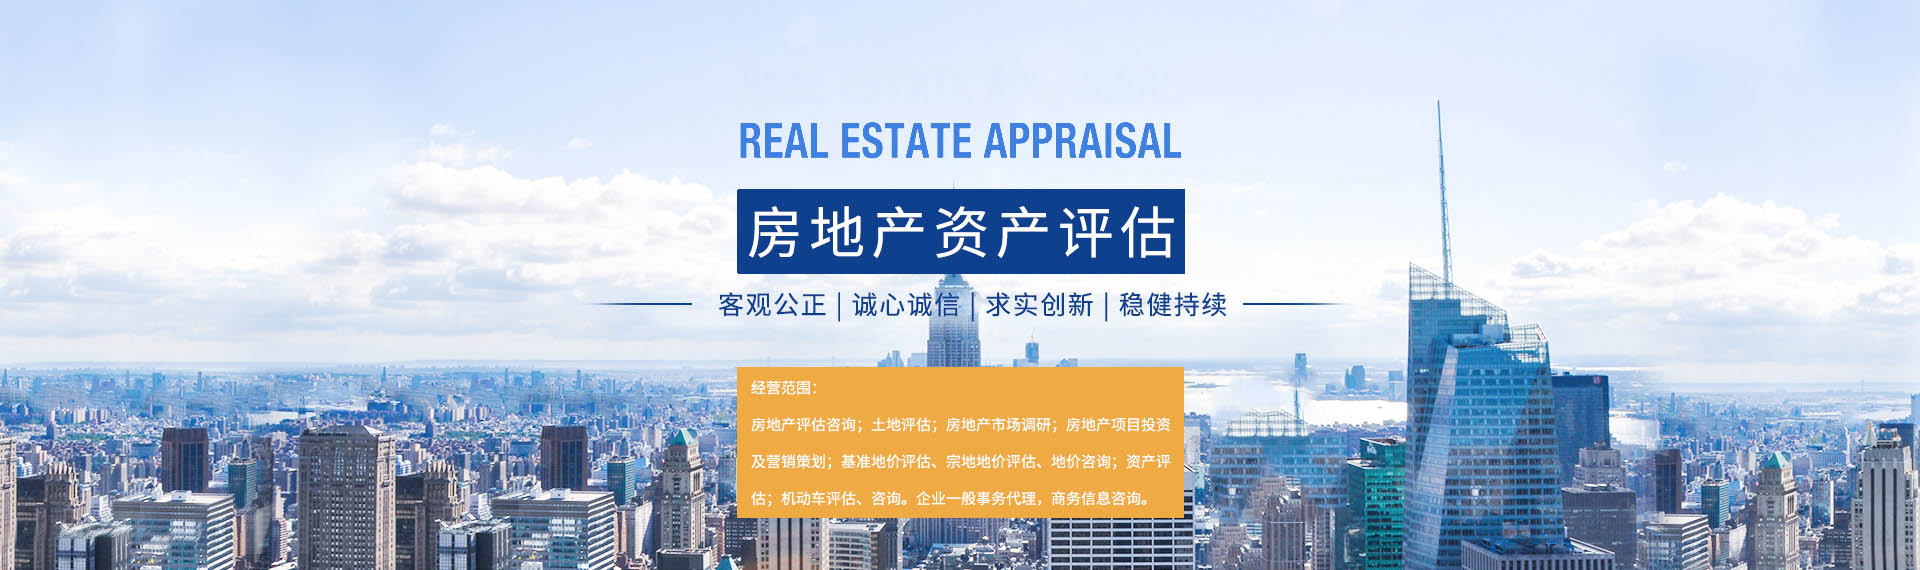 贵州华夏和房地产资产评估有限公司